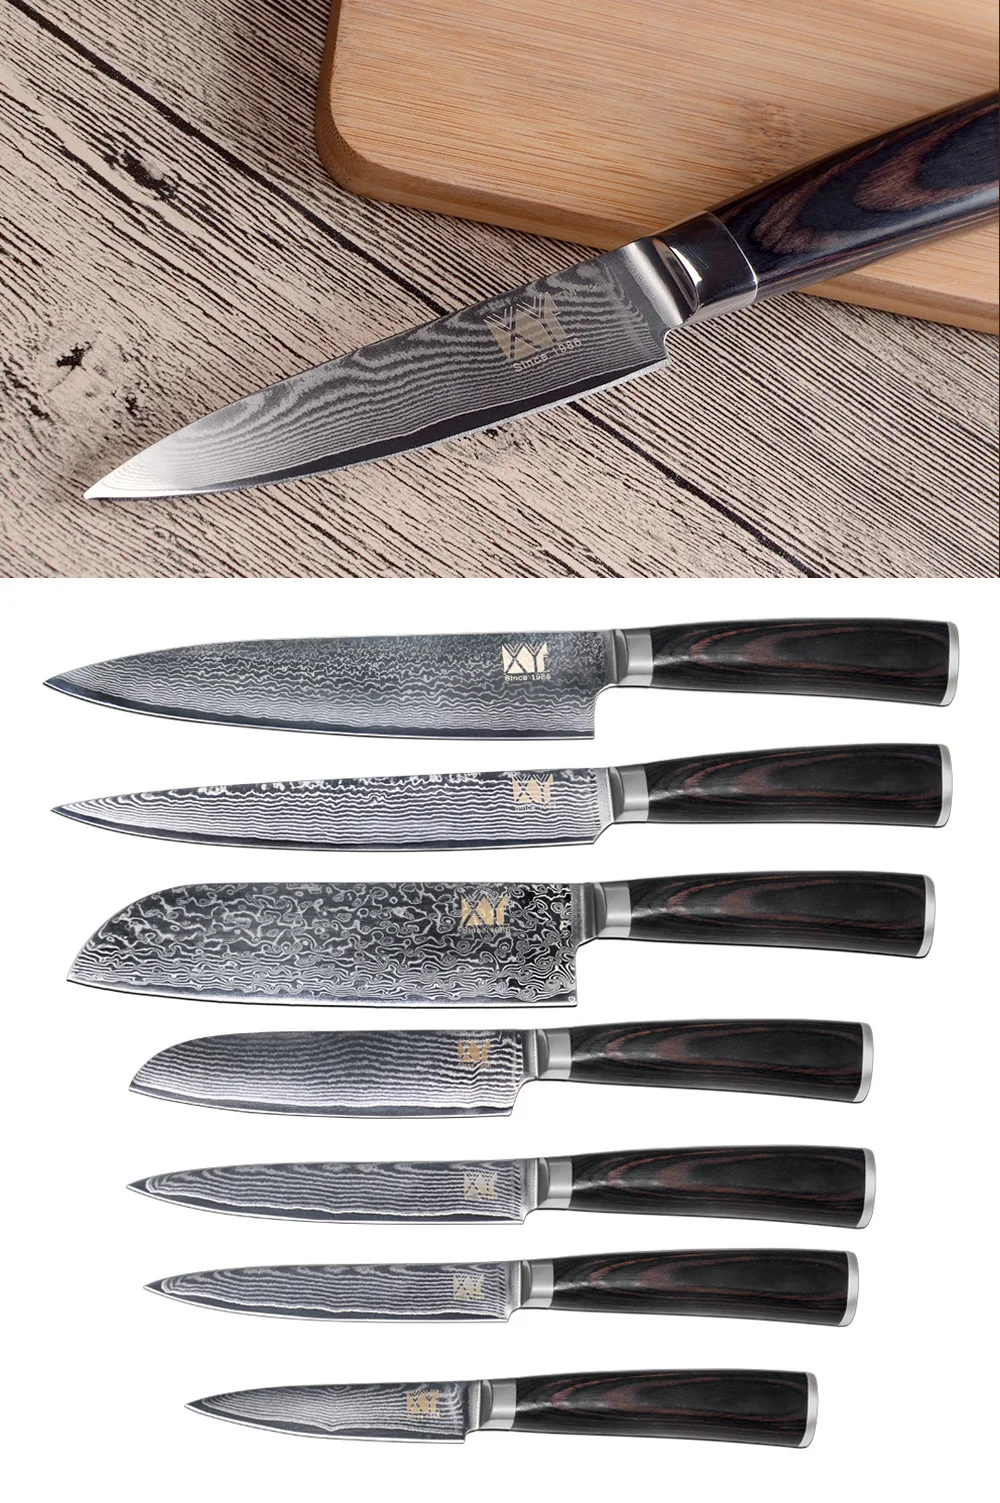 XYj кухонный нож, Дамасские Ножи VG10 Core, 7 шт. в наборе, высококачественный японский дамасский стальной нож с красивым узором, кухонные инструменты для приготовления пищи